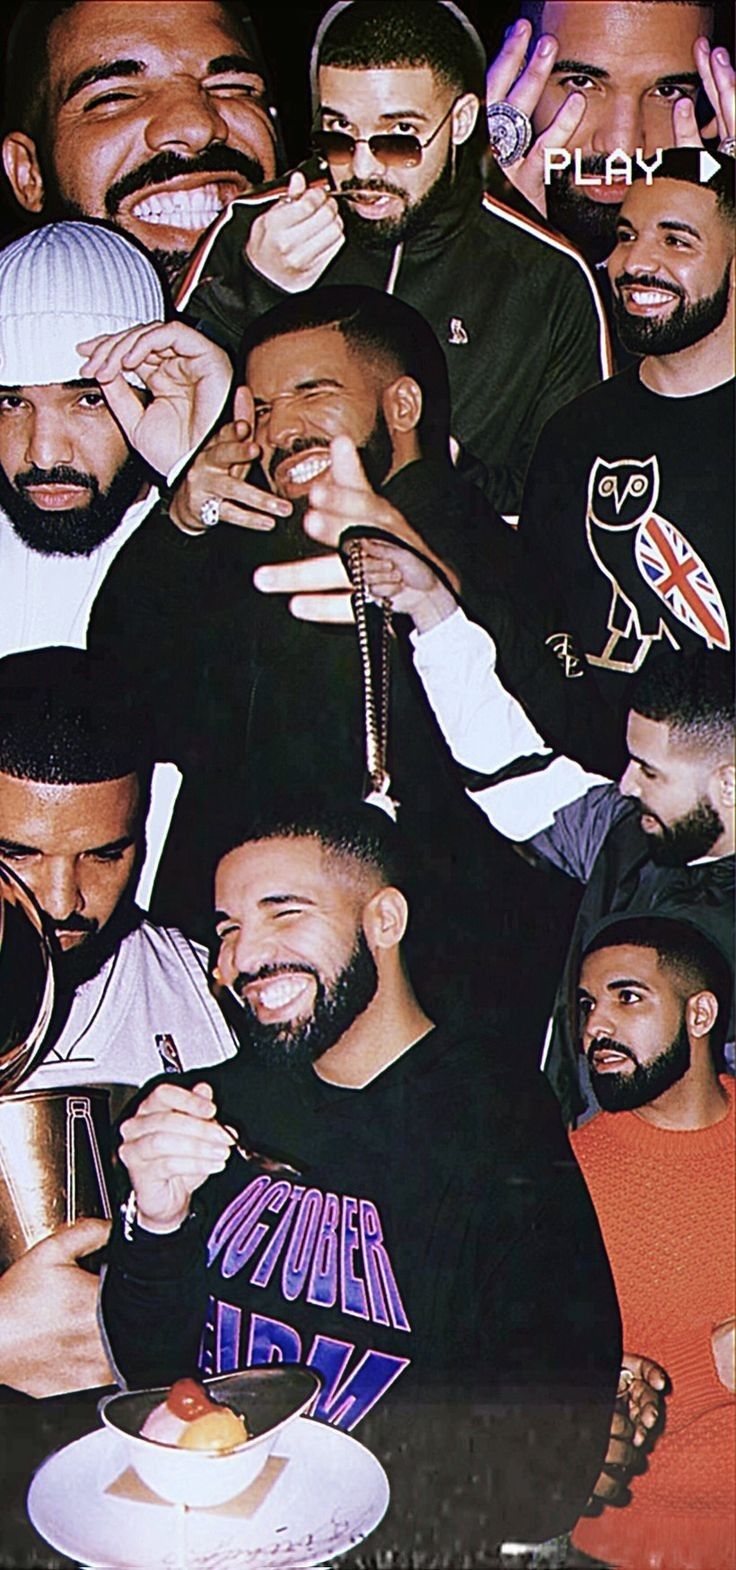 29+] Rapper Drake Wallpapers - WallpaperSafari